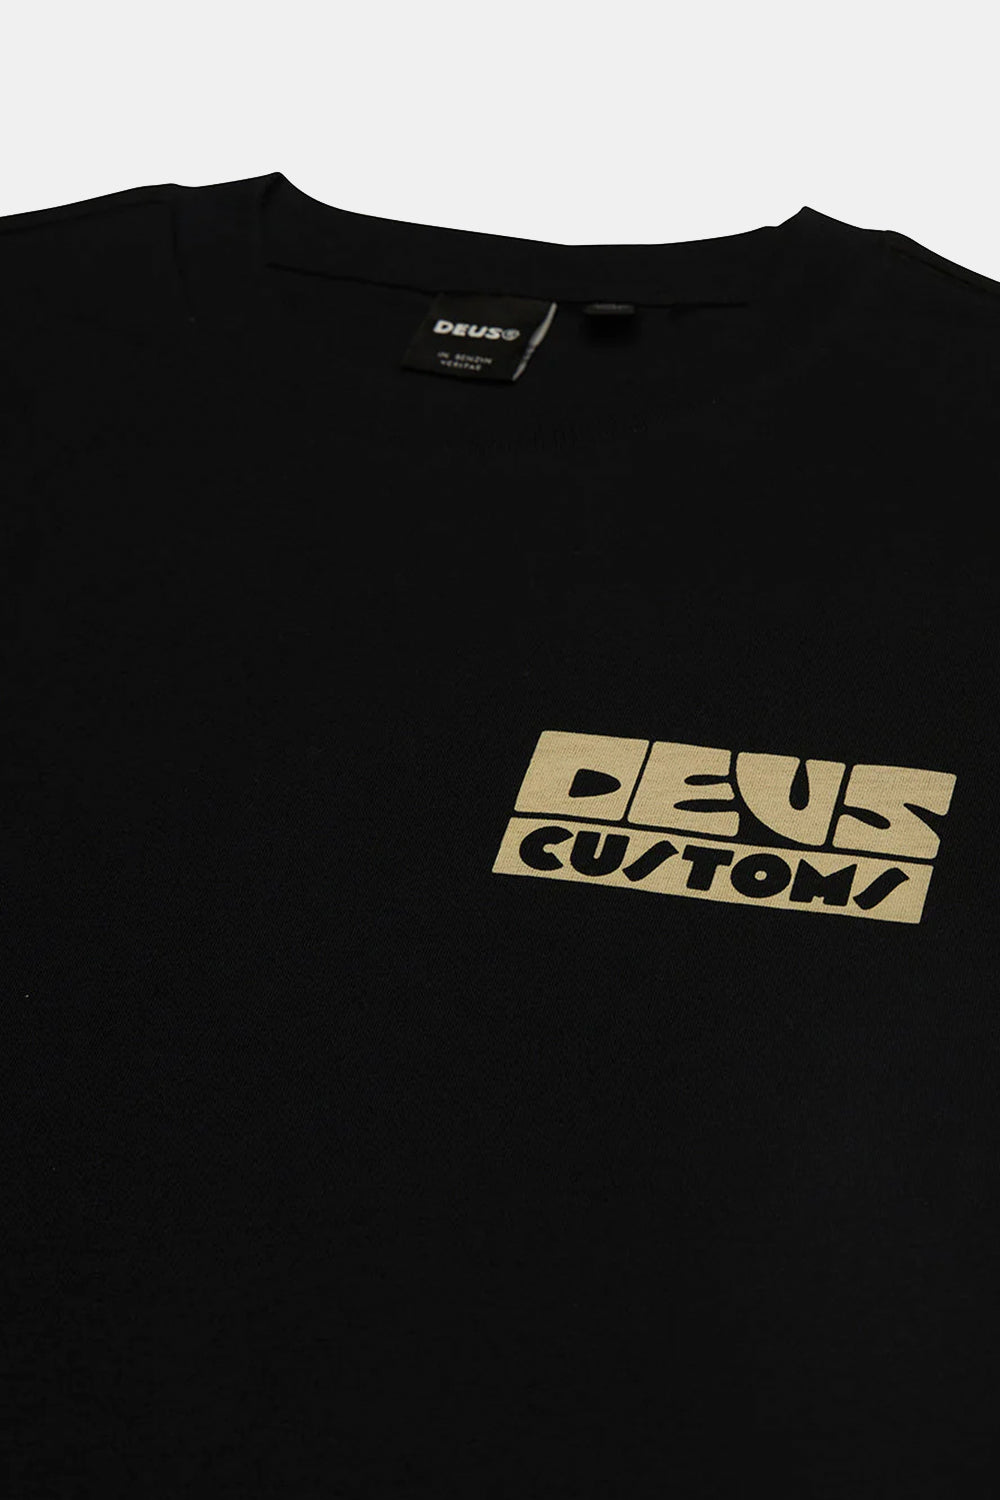 Deus Pushstart T-shirt (Black)
